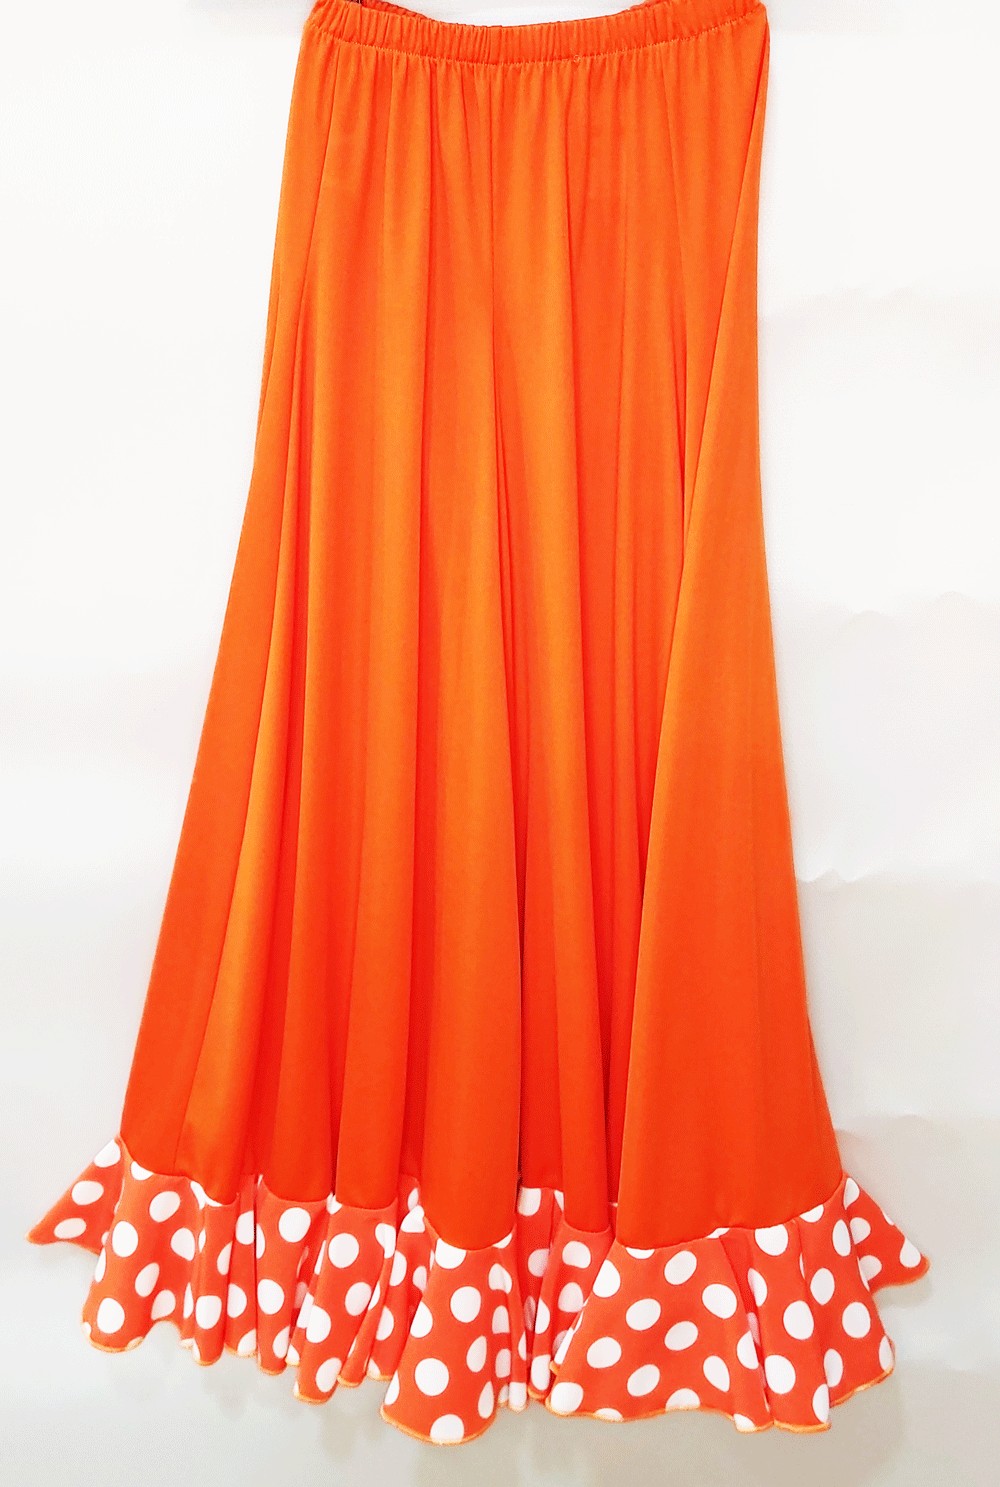 Falda flamenca, falda de ensayo para niña y mujer